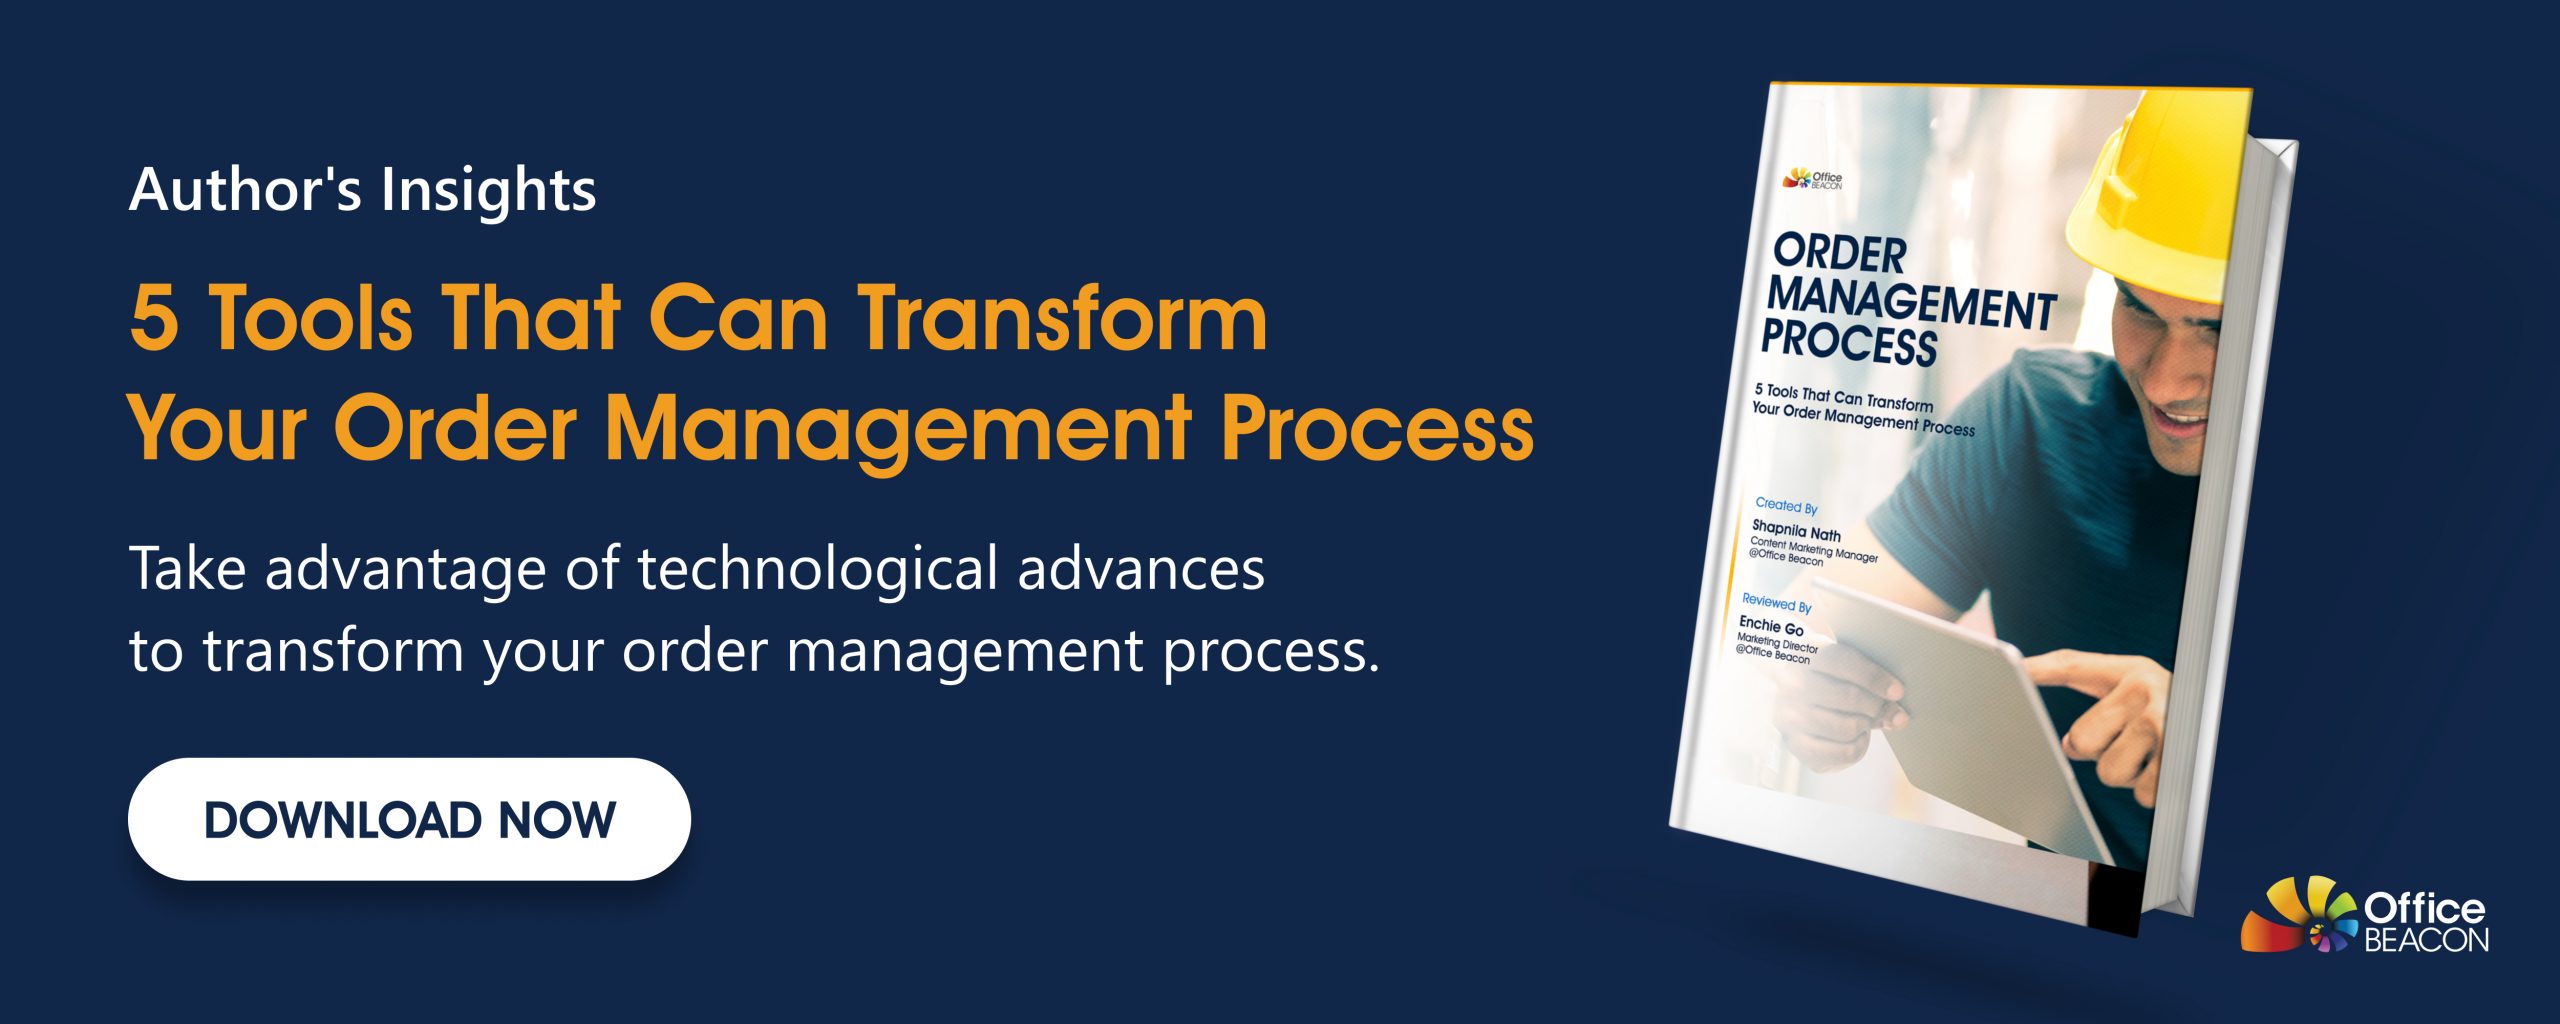 order management process tools